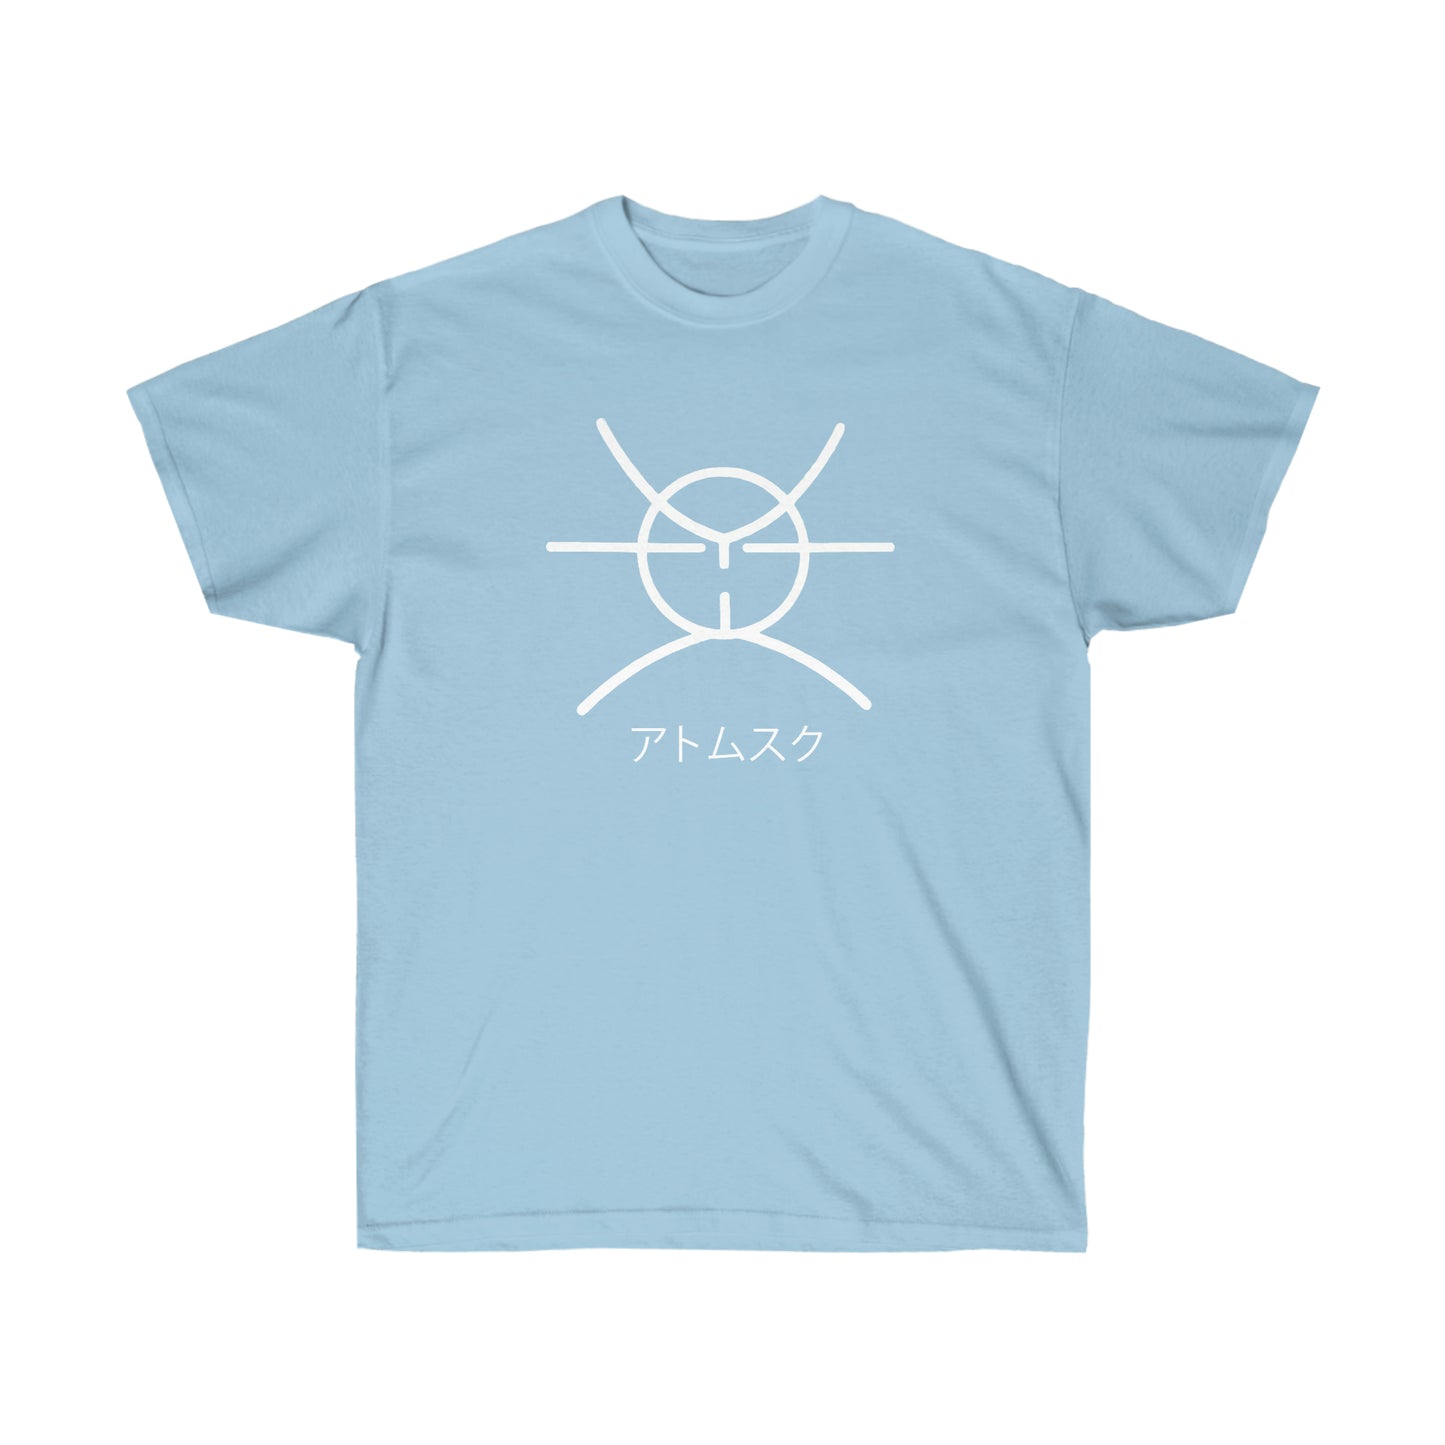 Atomsk shirt Symbol t-shirt